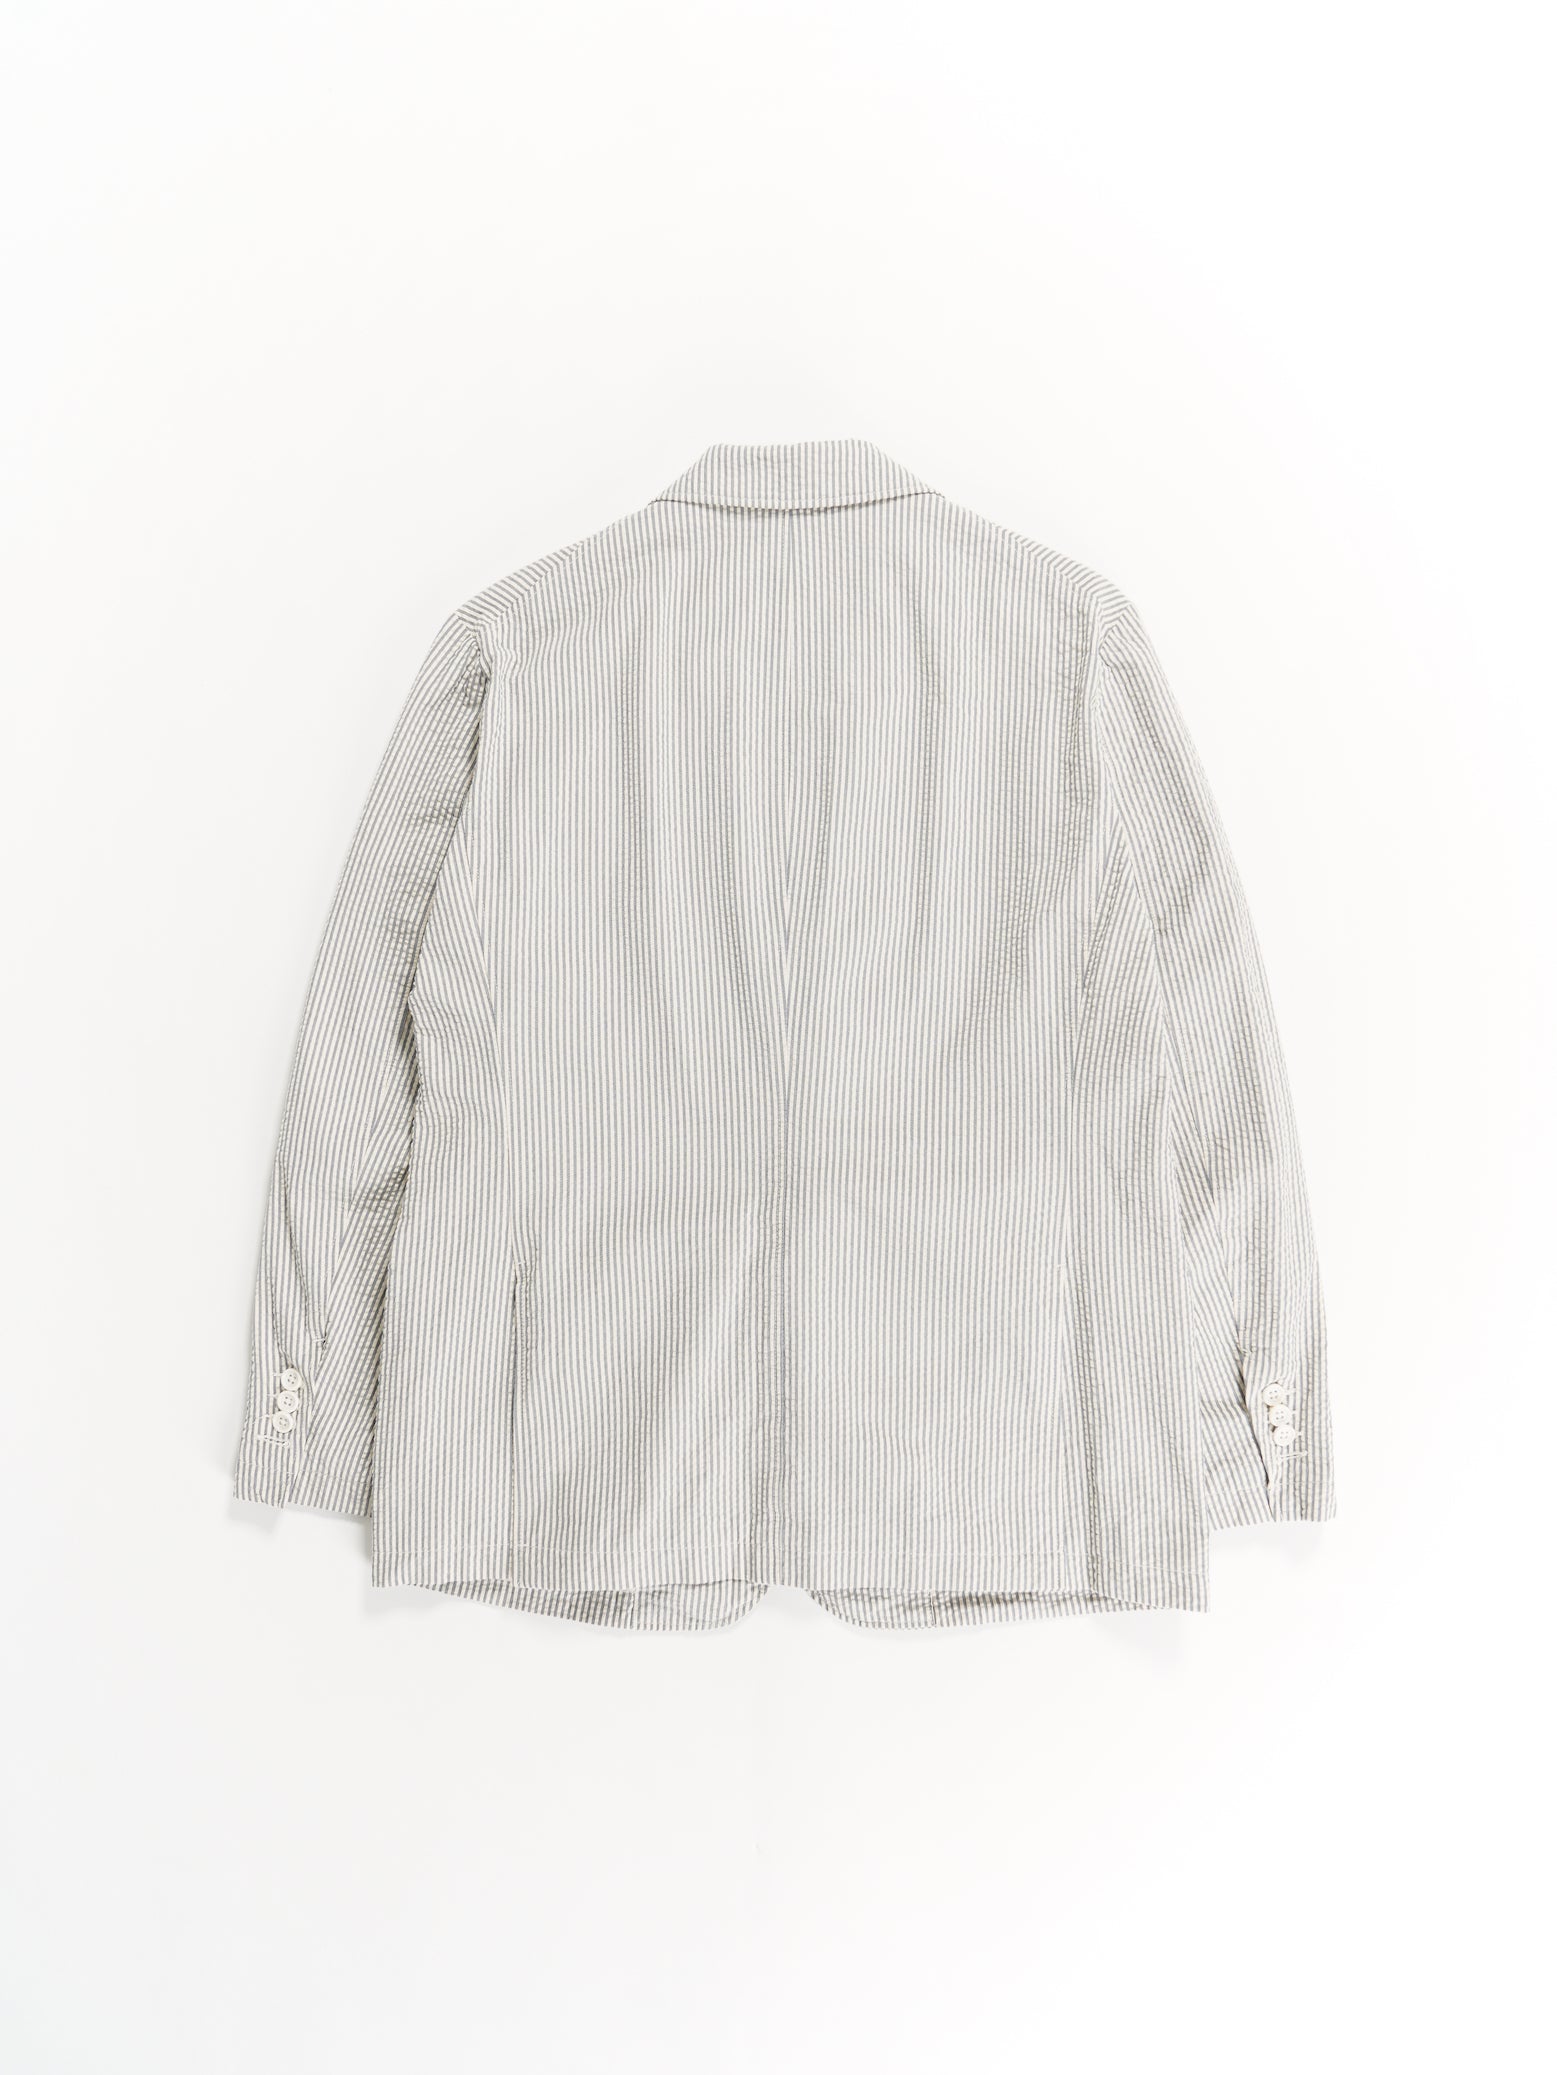 Andover Jacket - Navy / Natural Cotton Seersucker